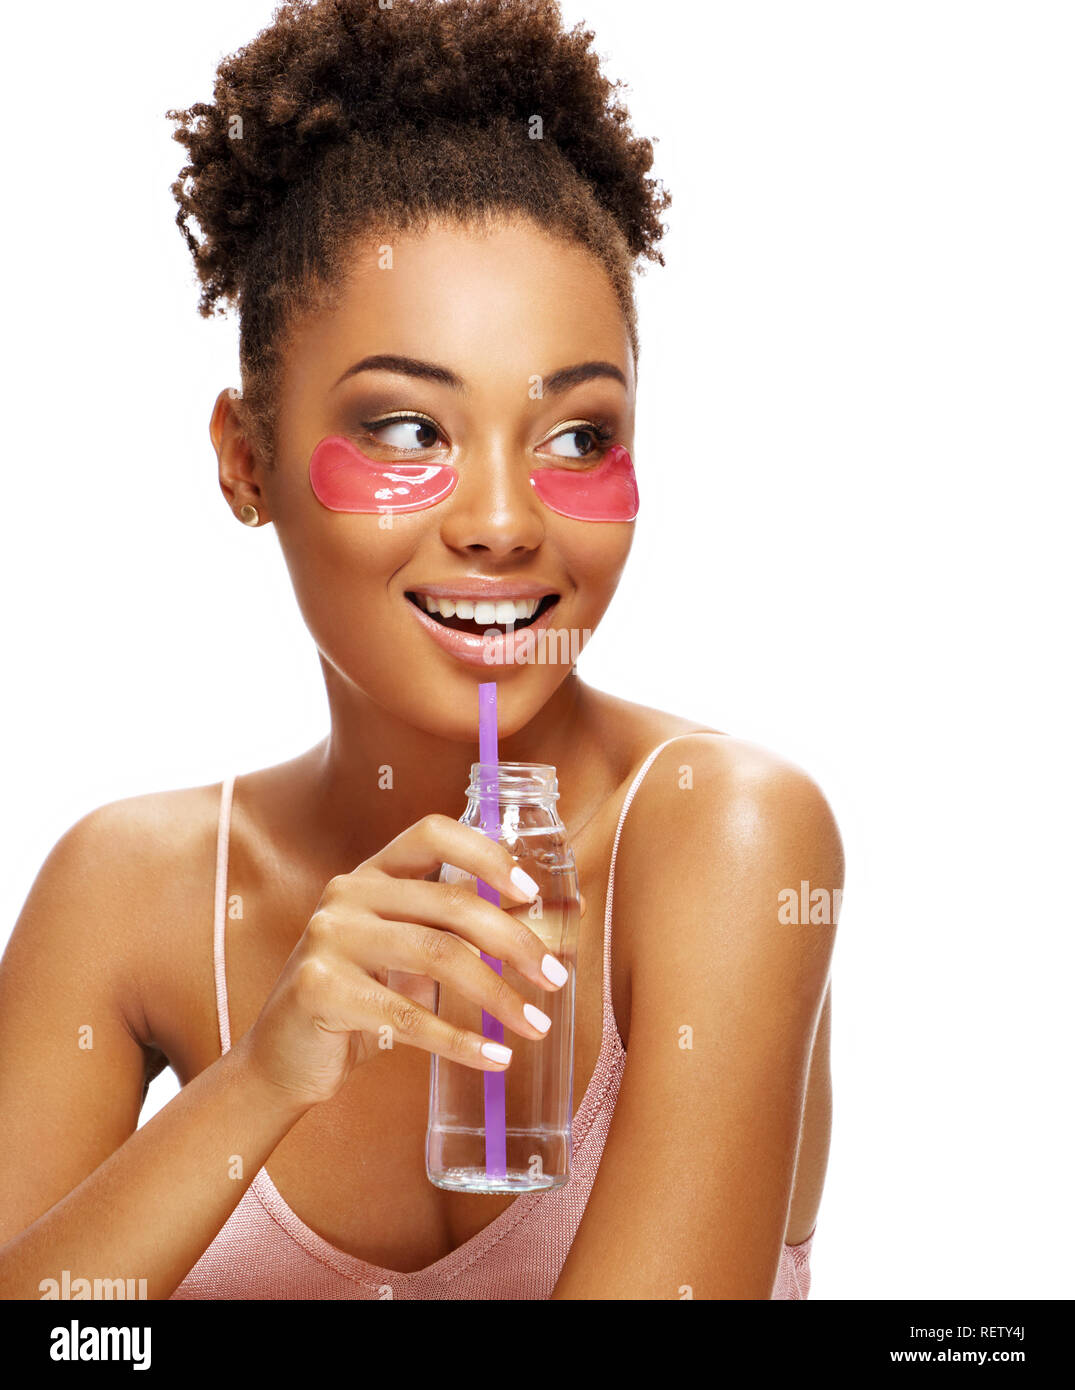 Schöne Mädchen mit rosa Auge Flecken auf ihrem Gesicht und hält eine Flasche Wasser. Foto der jungen afrikanischen amerikanischen Mädchen auf weißem Hintergrund. Y Stockfoto